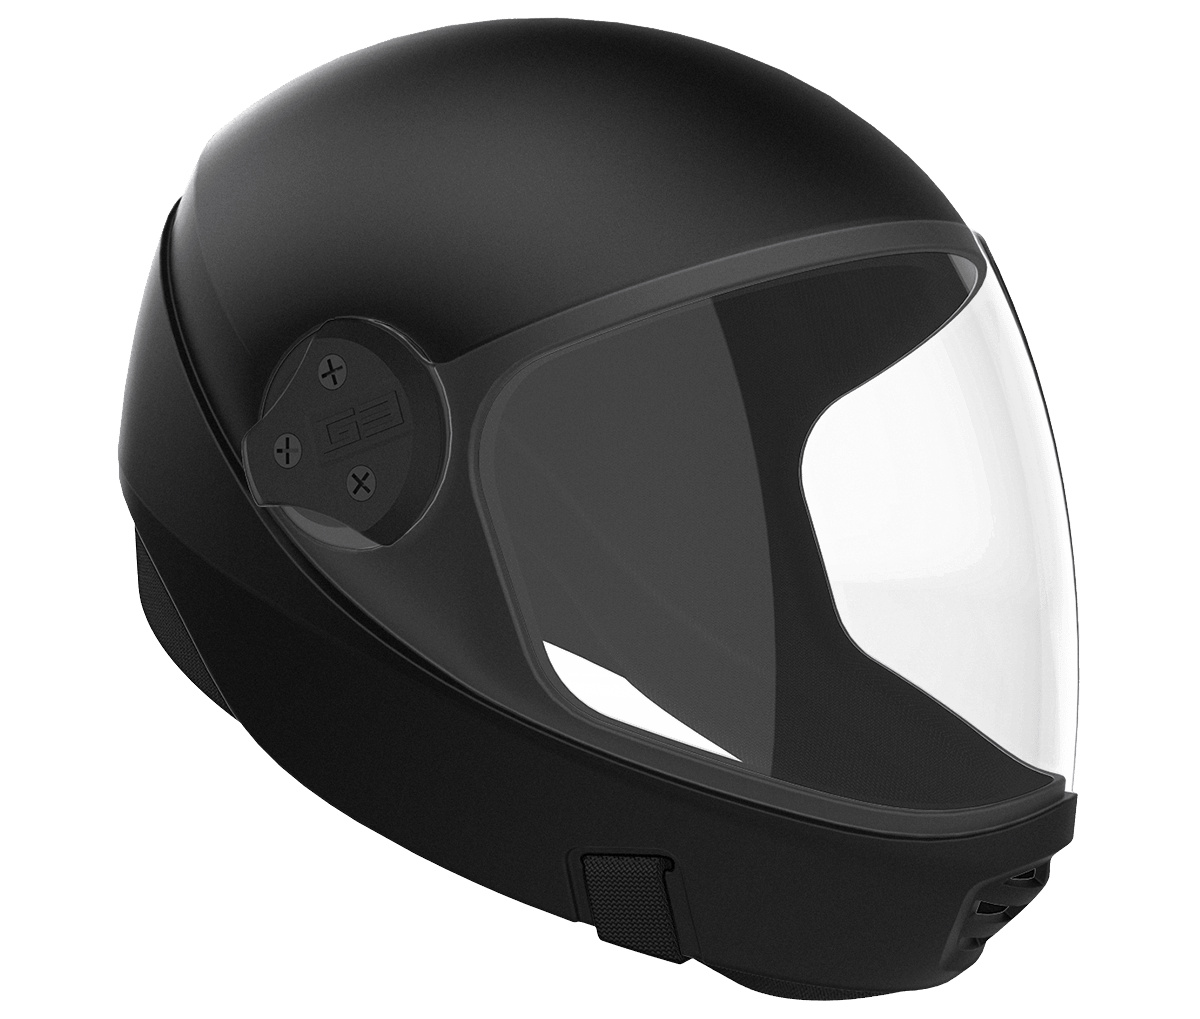 Buy Cookie G3 Skydiving Helmet & Accessories